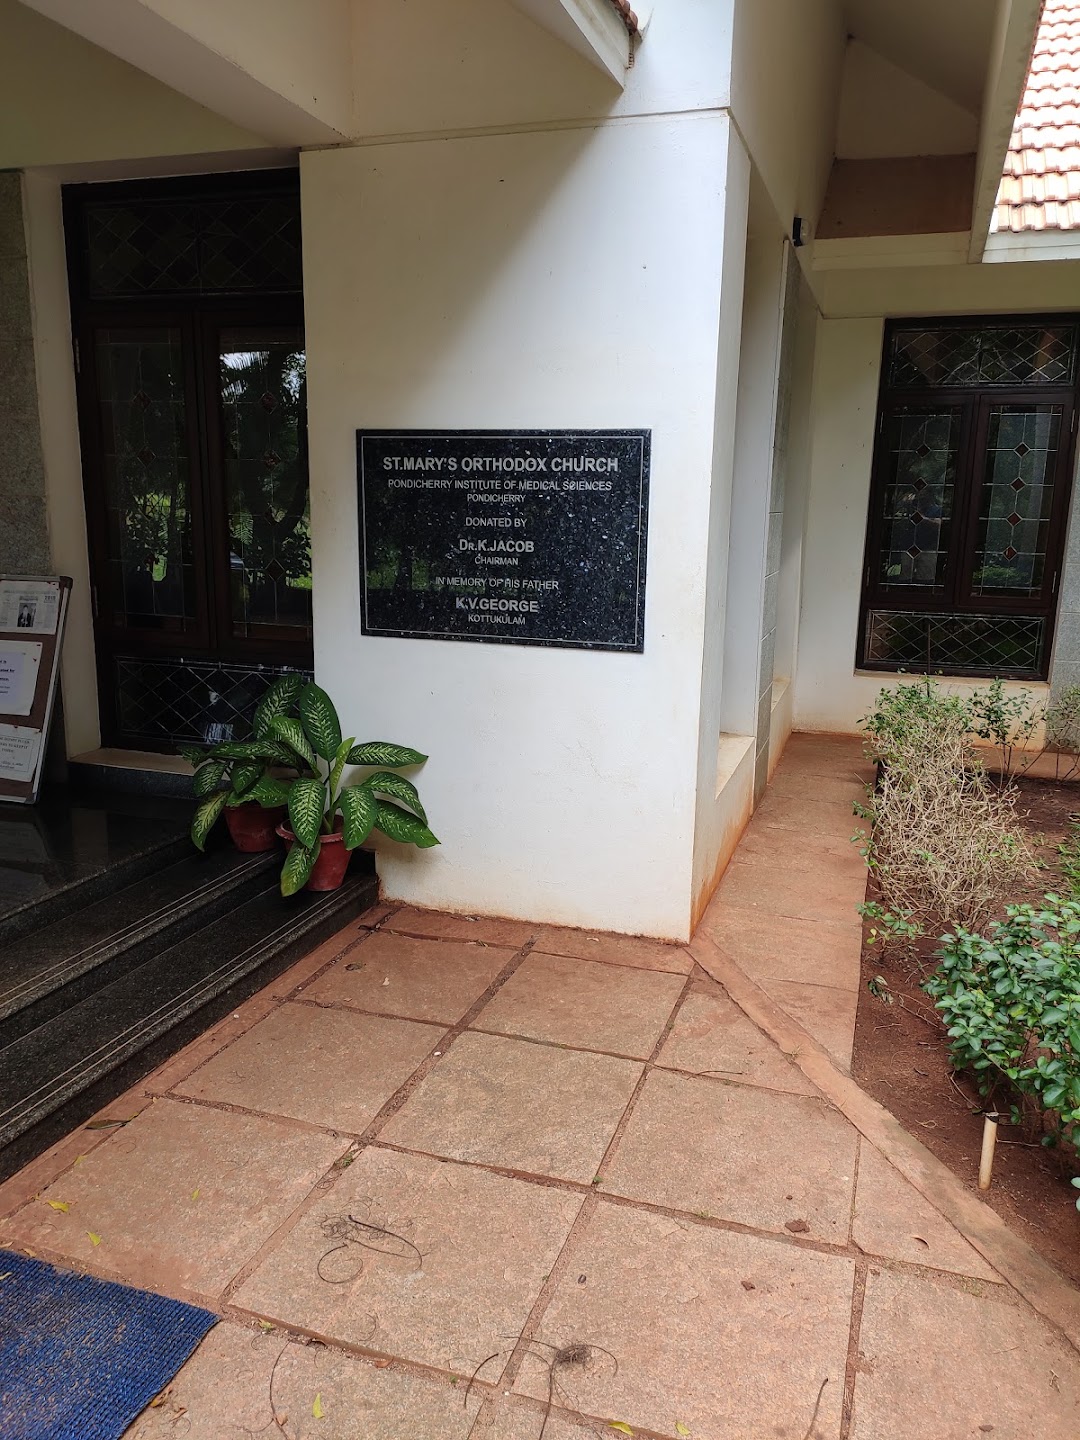 Pondicherry  Institute Of Medical  Sciences-photo